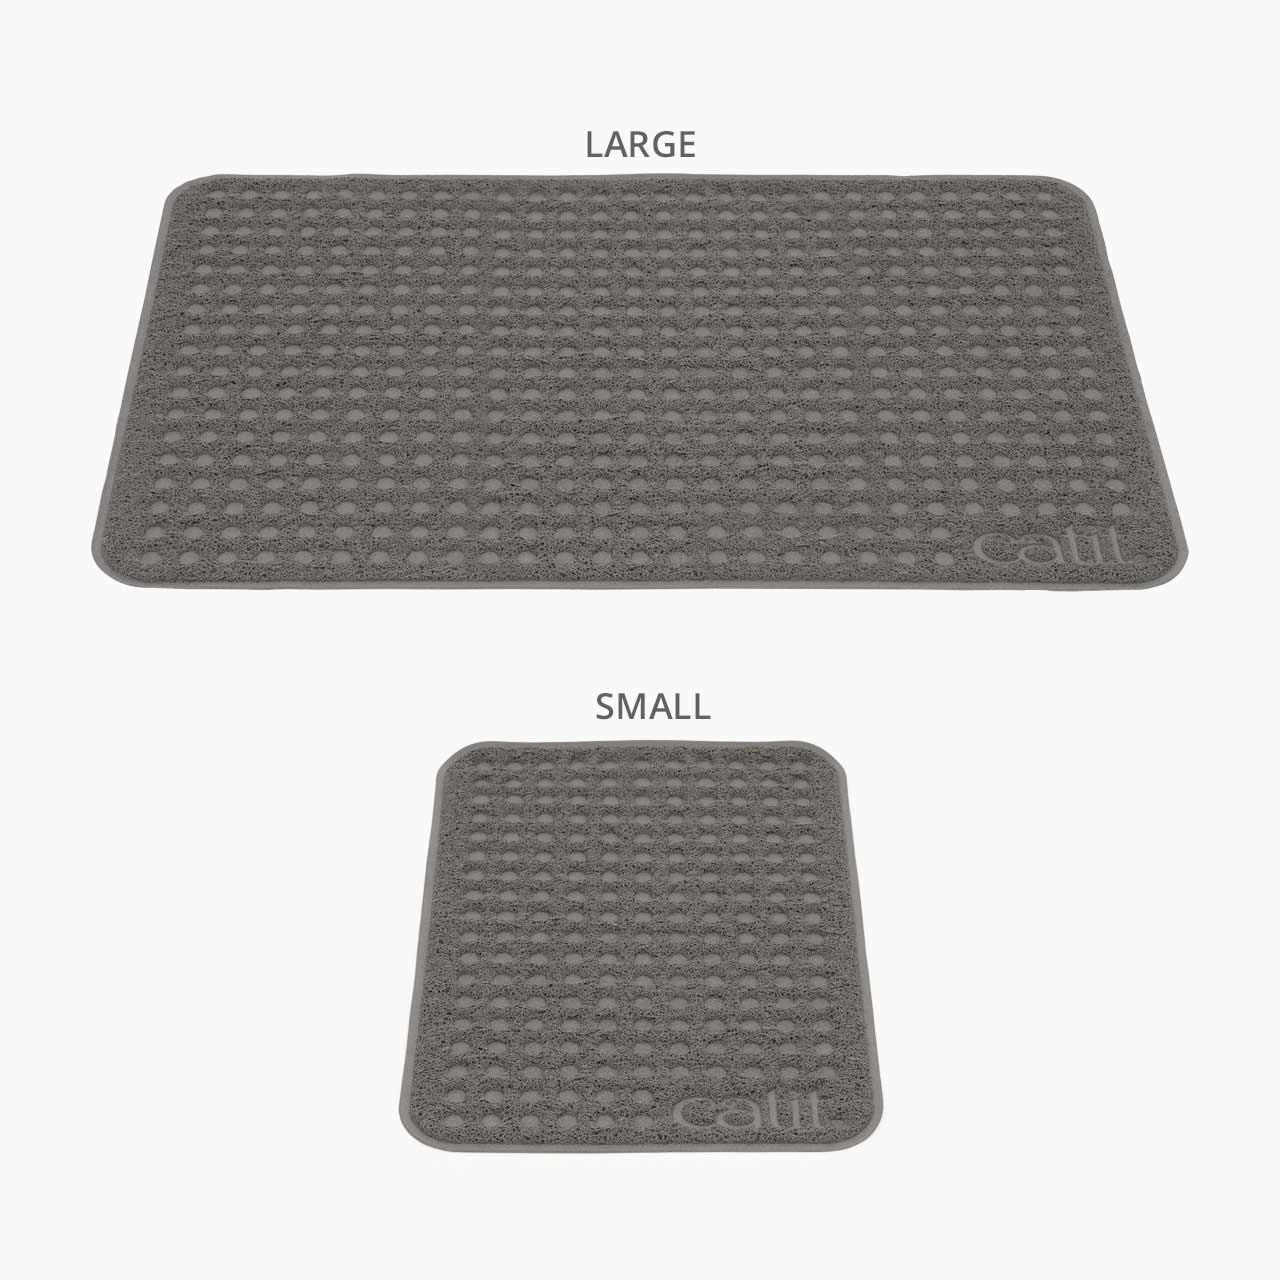 Deux formats de tapis pour bac à litière